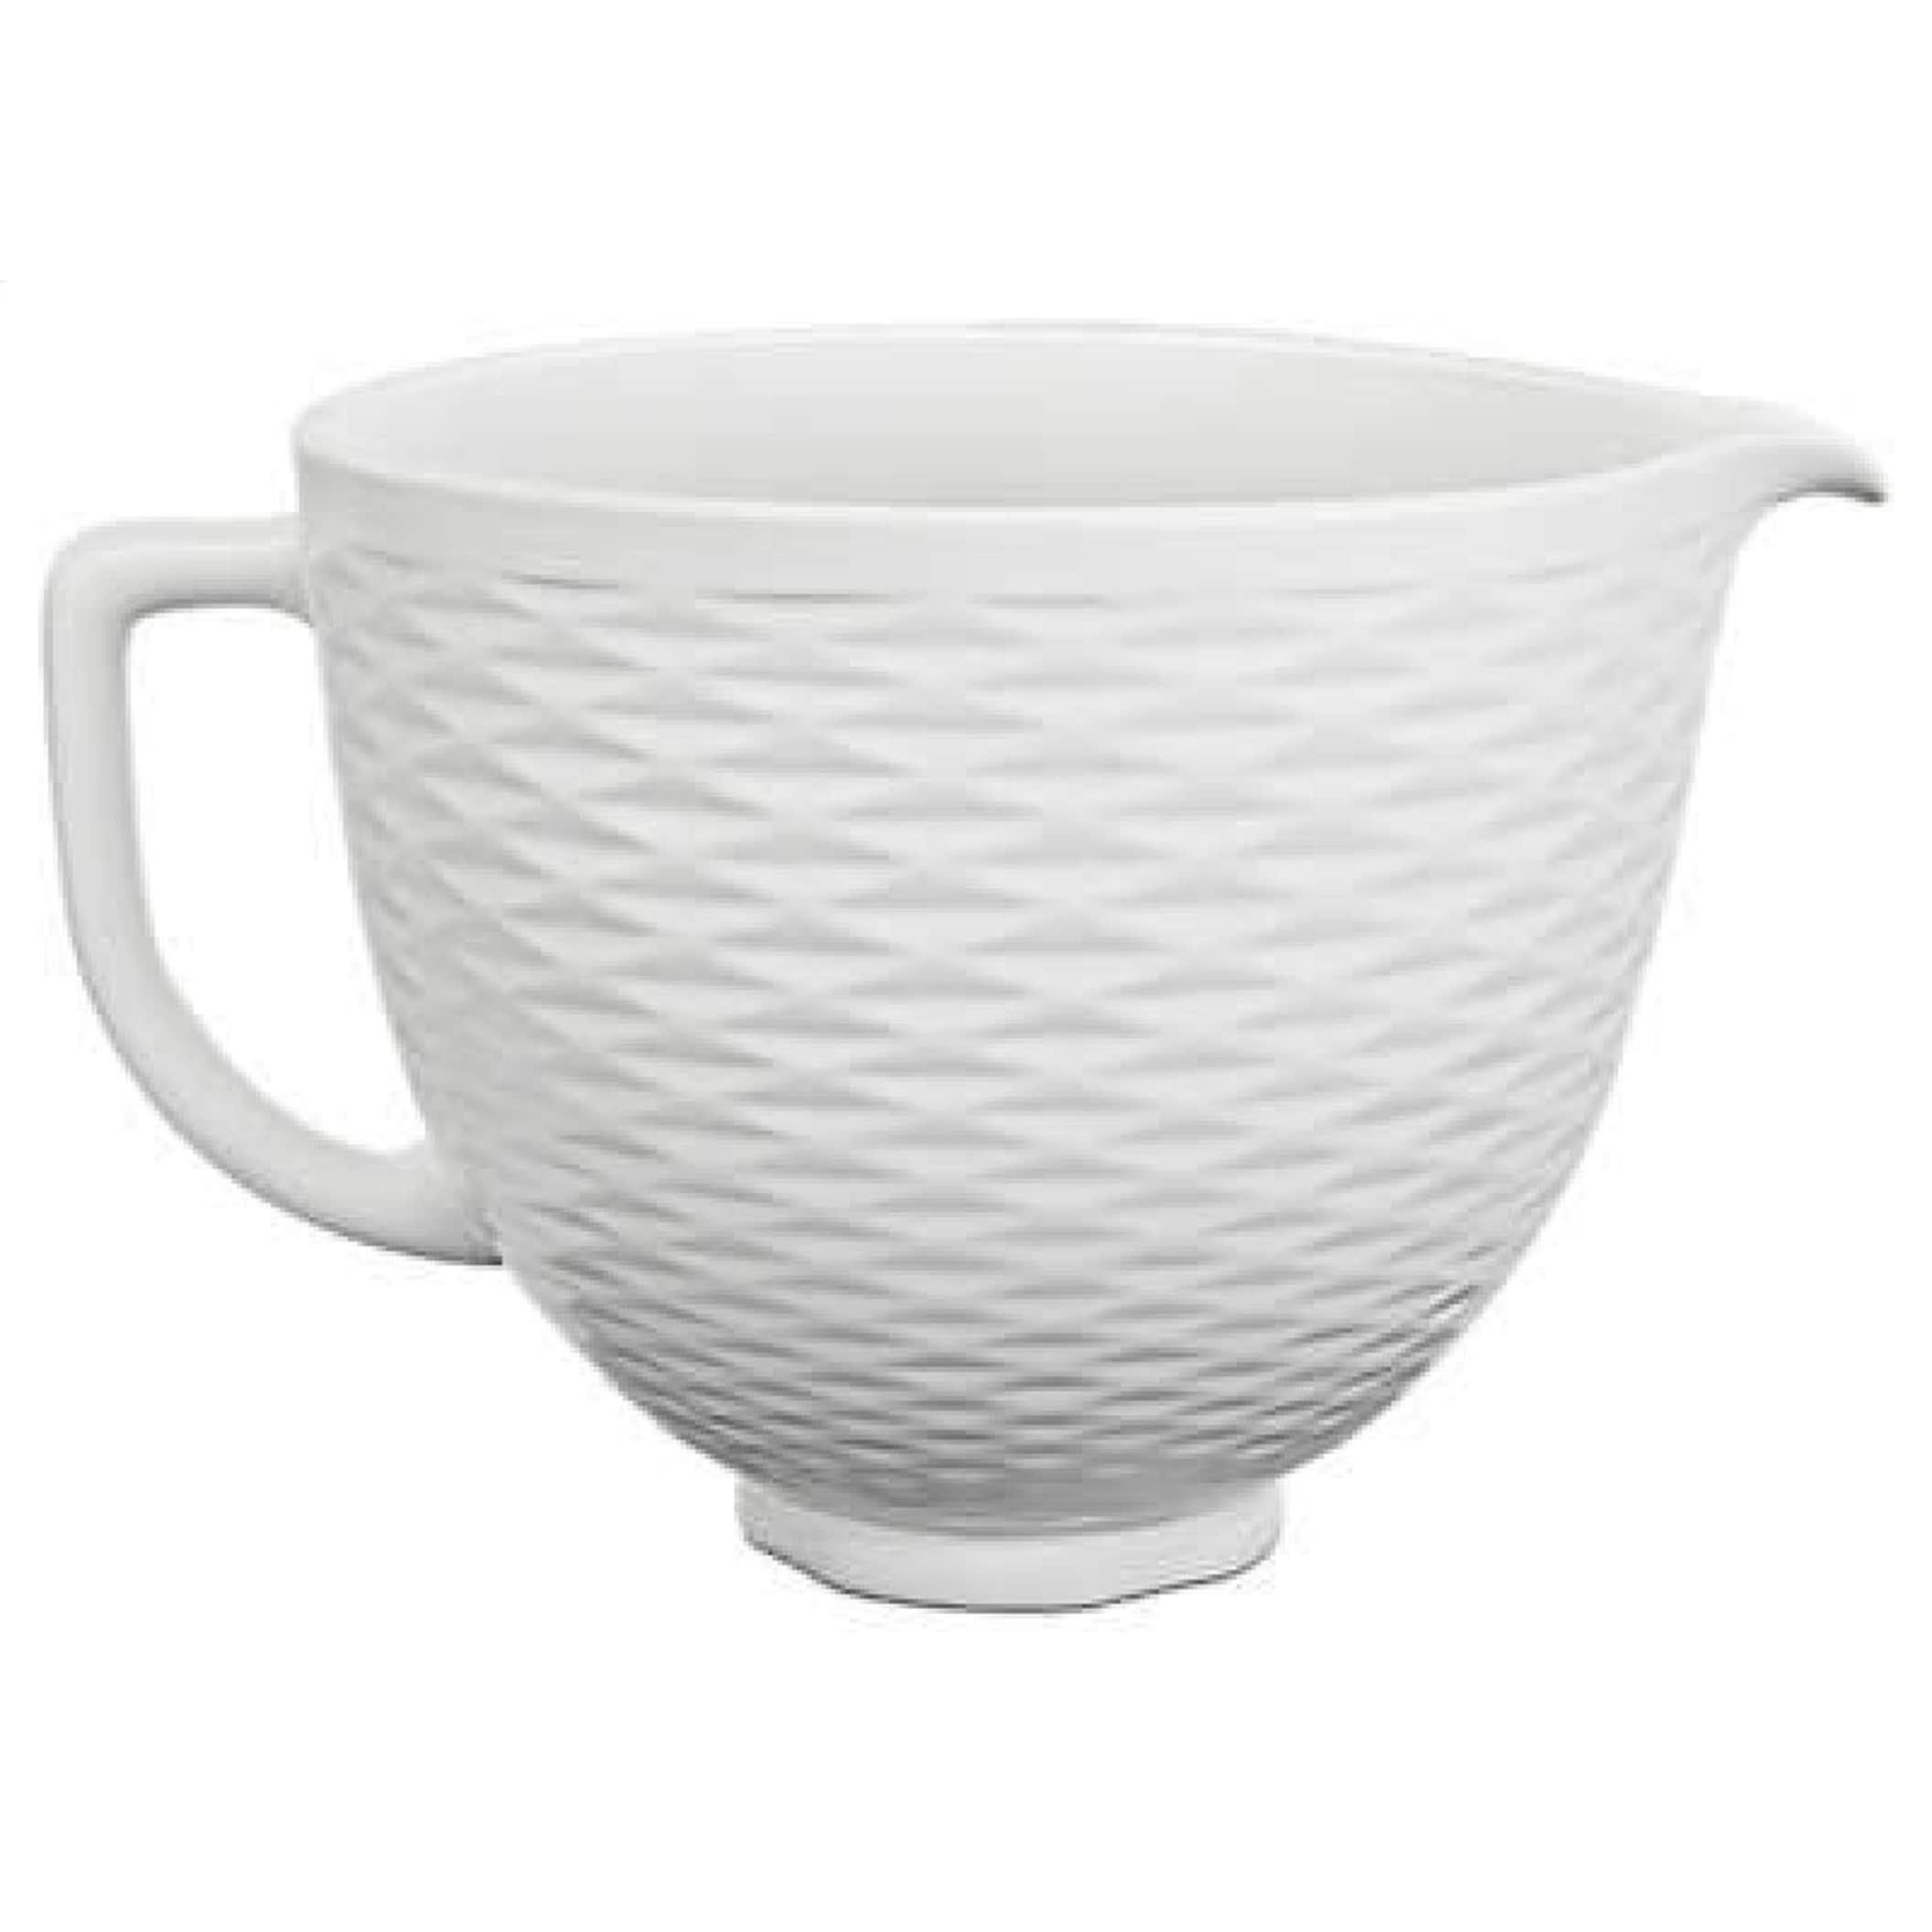 5-Qt Artisan Stand Mixer (Porcelain White), KitchenAid